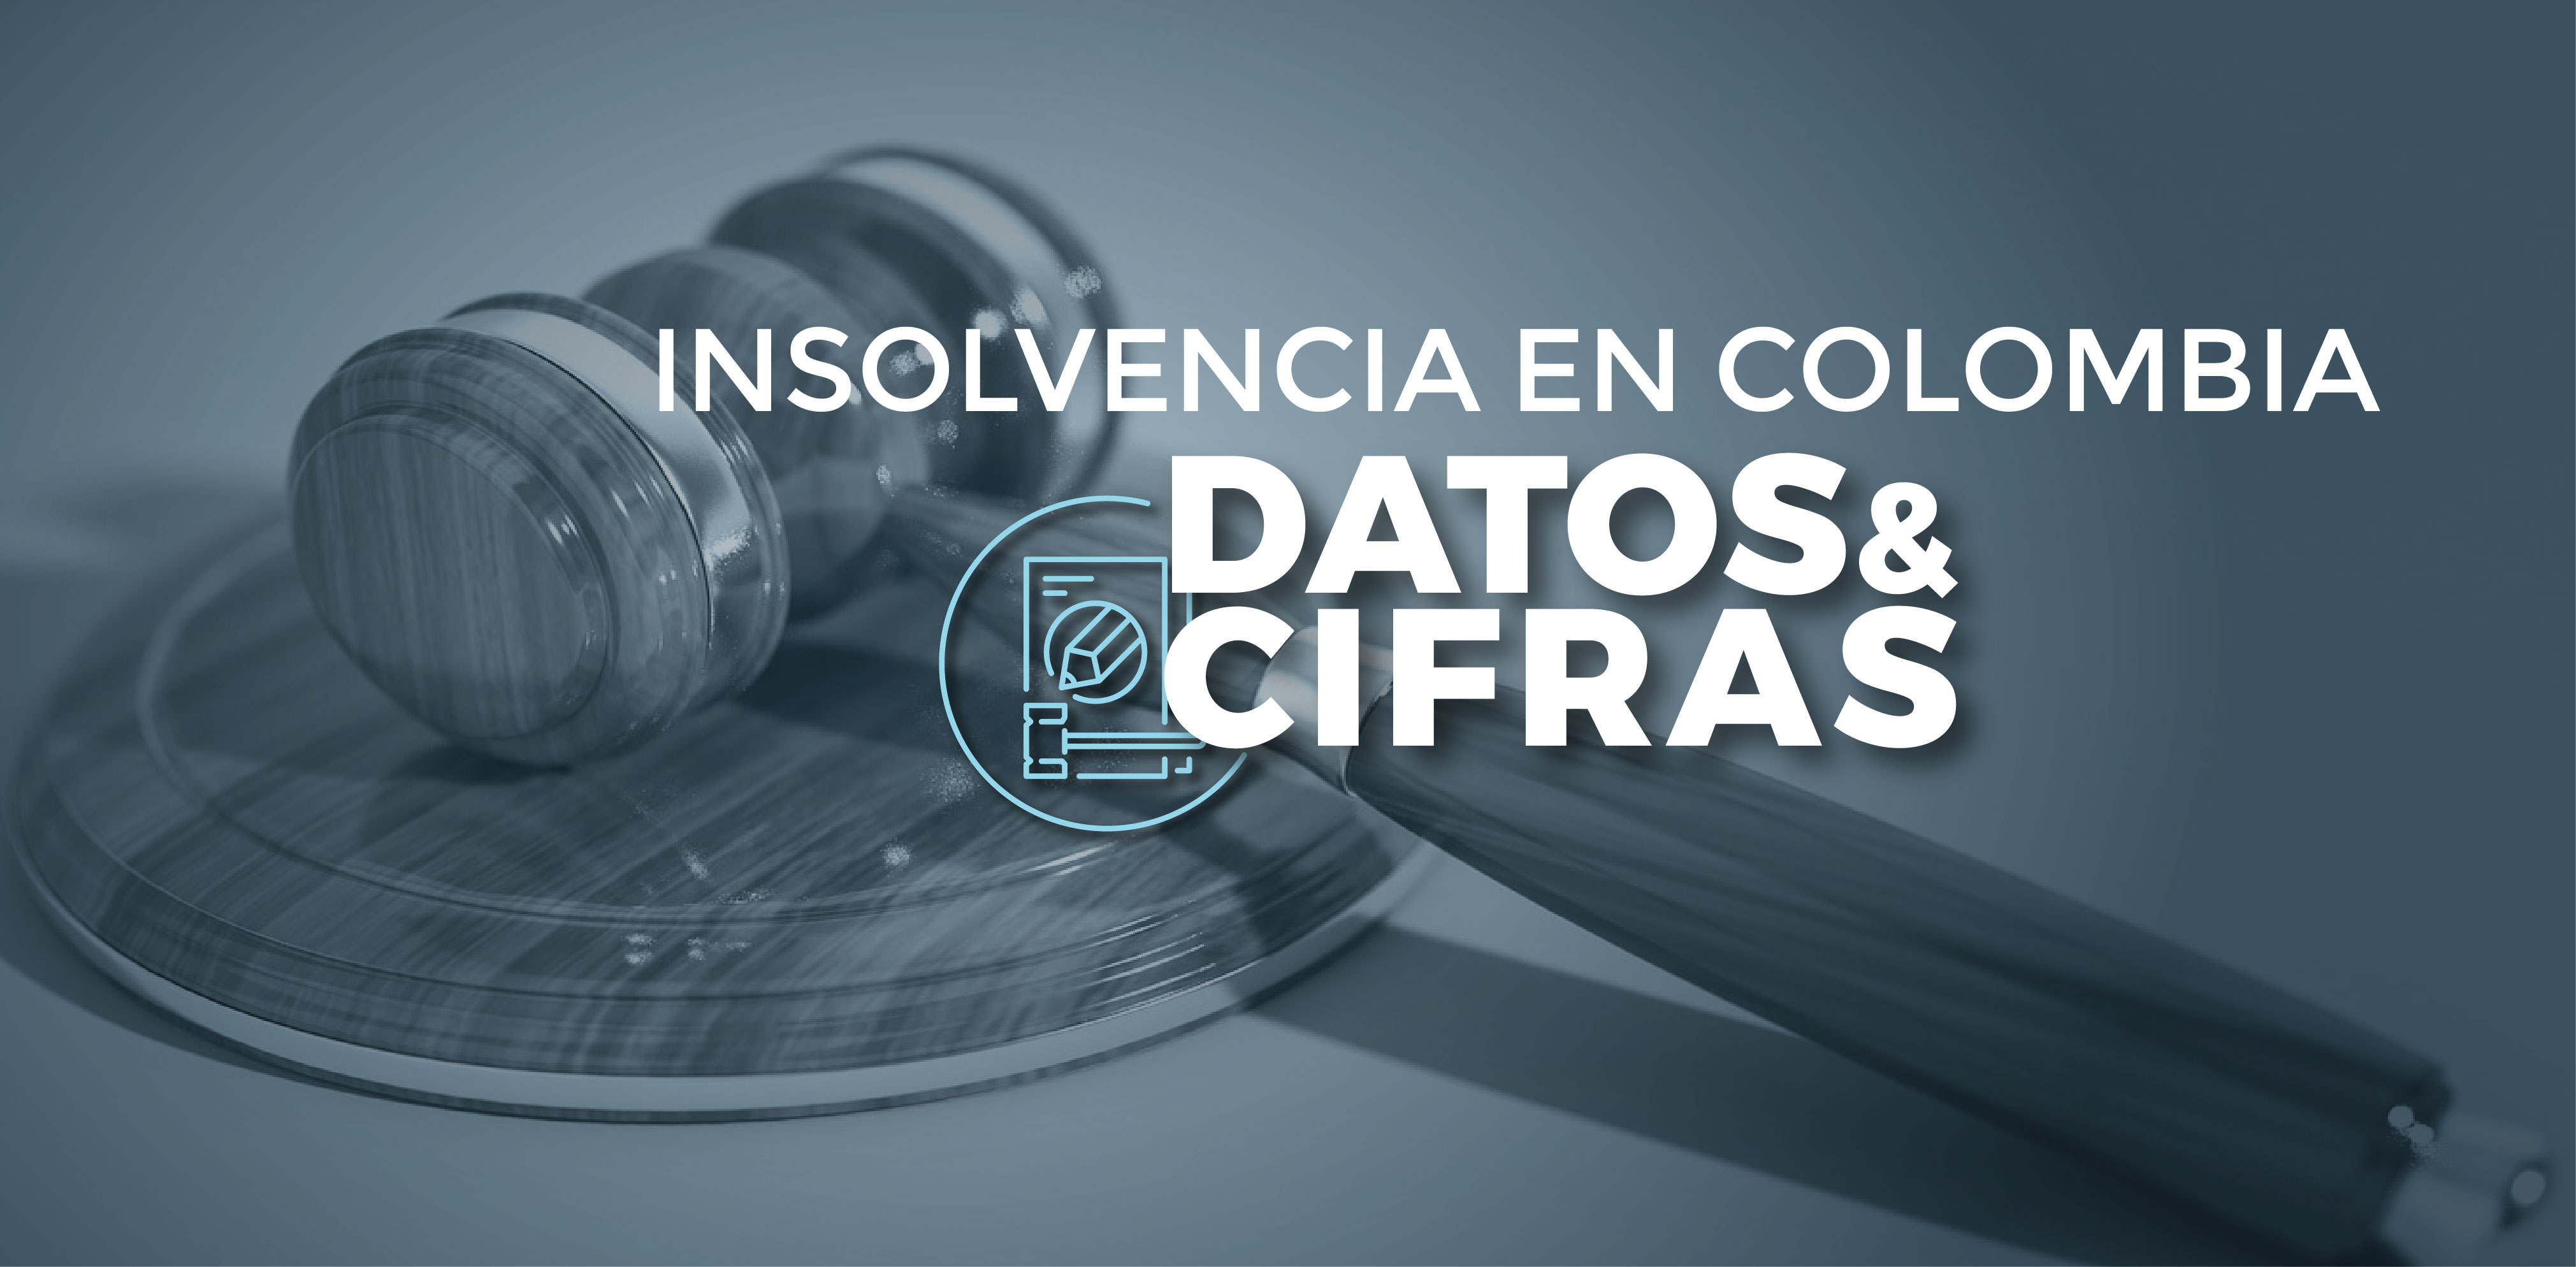 Consulte el mapa de insolvencia con corte a 30 de junio de 2019, el cual contiene el mapa completo de cifras por jurisdicción, Bogotá y nuestras 6 intendencias regionales.